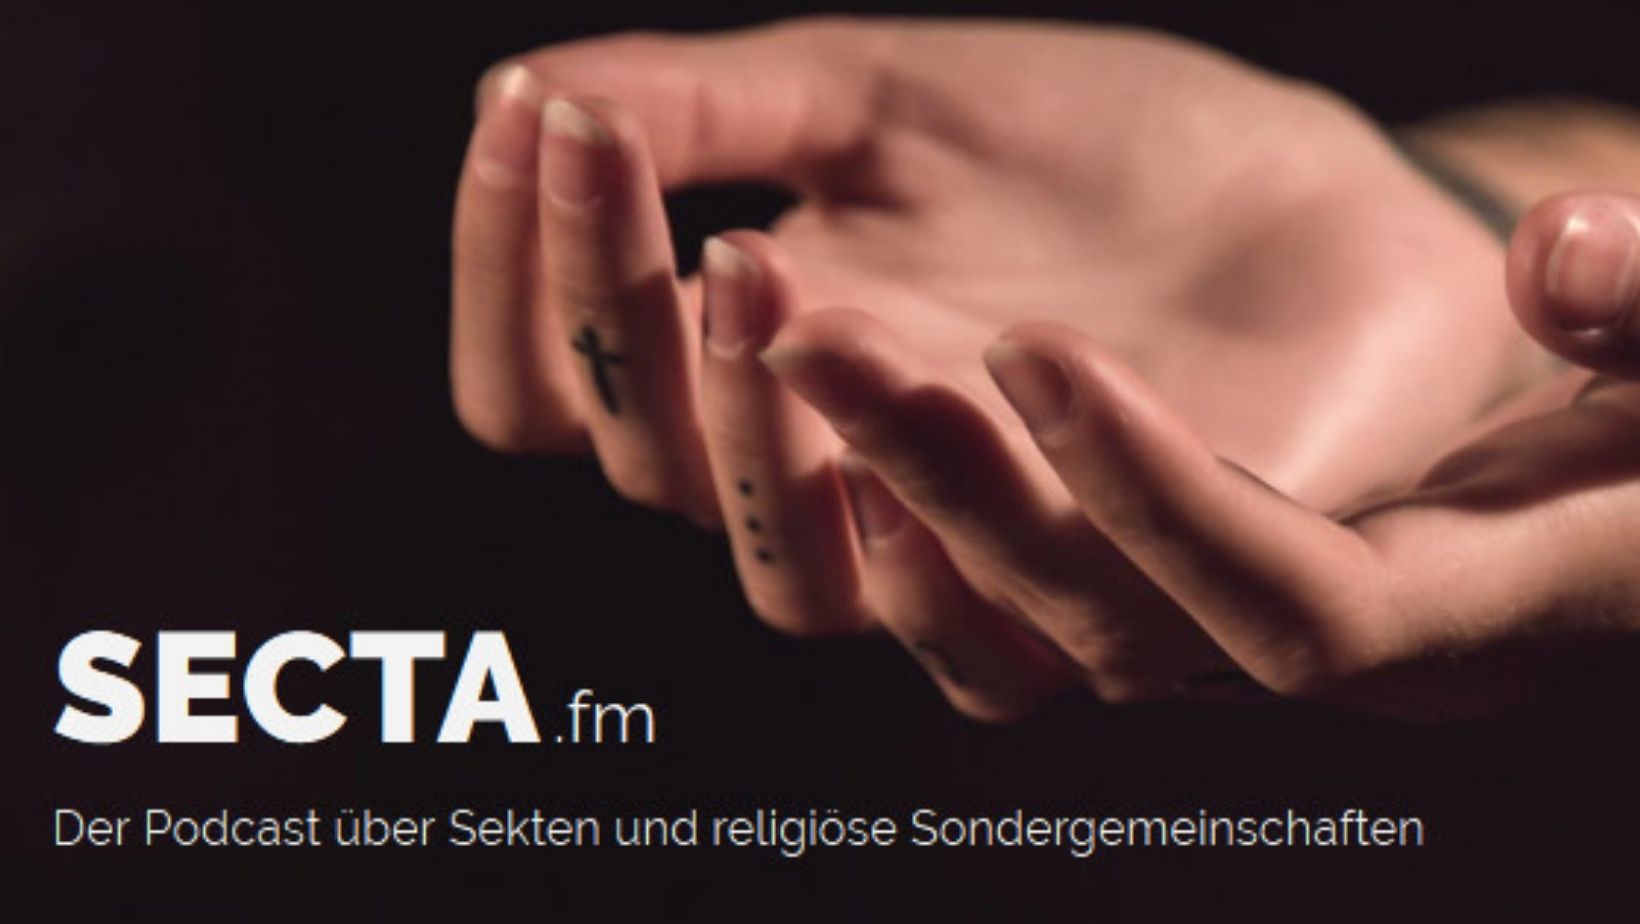 Schriftzug "secta.fm - Der Podcast über Sekten und religiöse Sondergemeinschaften"